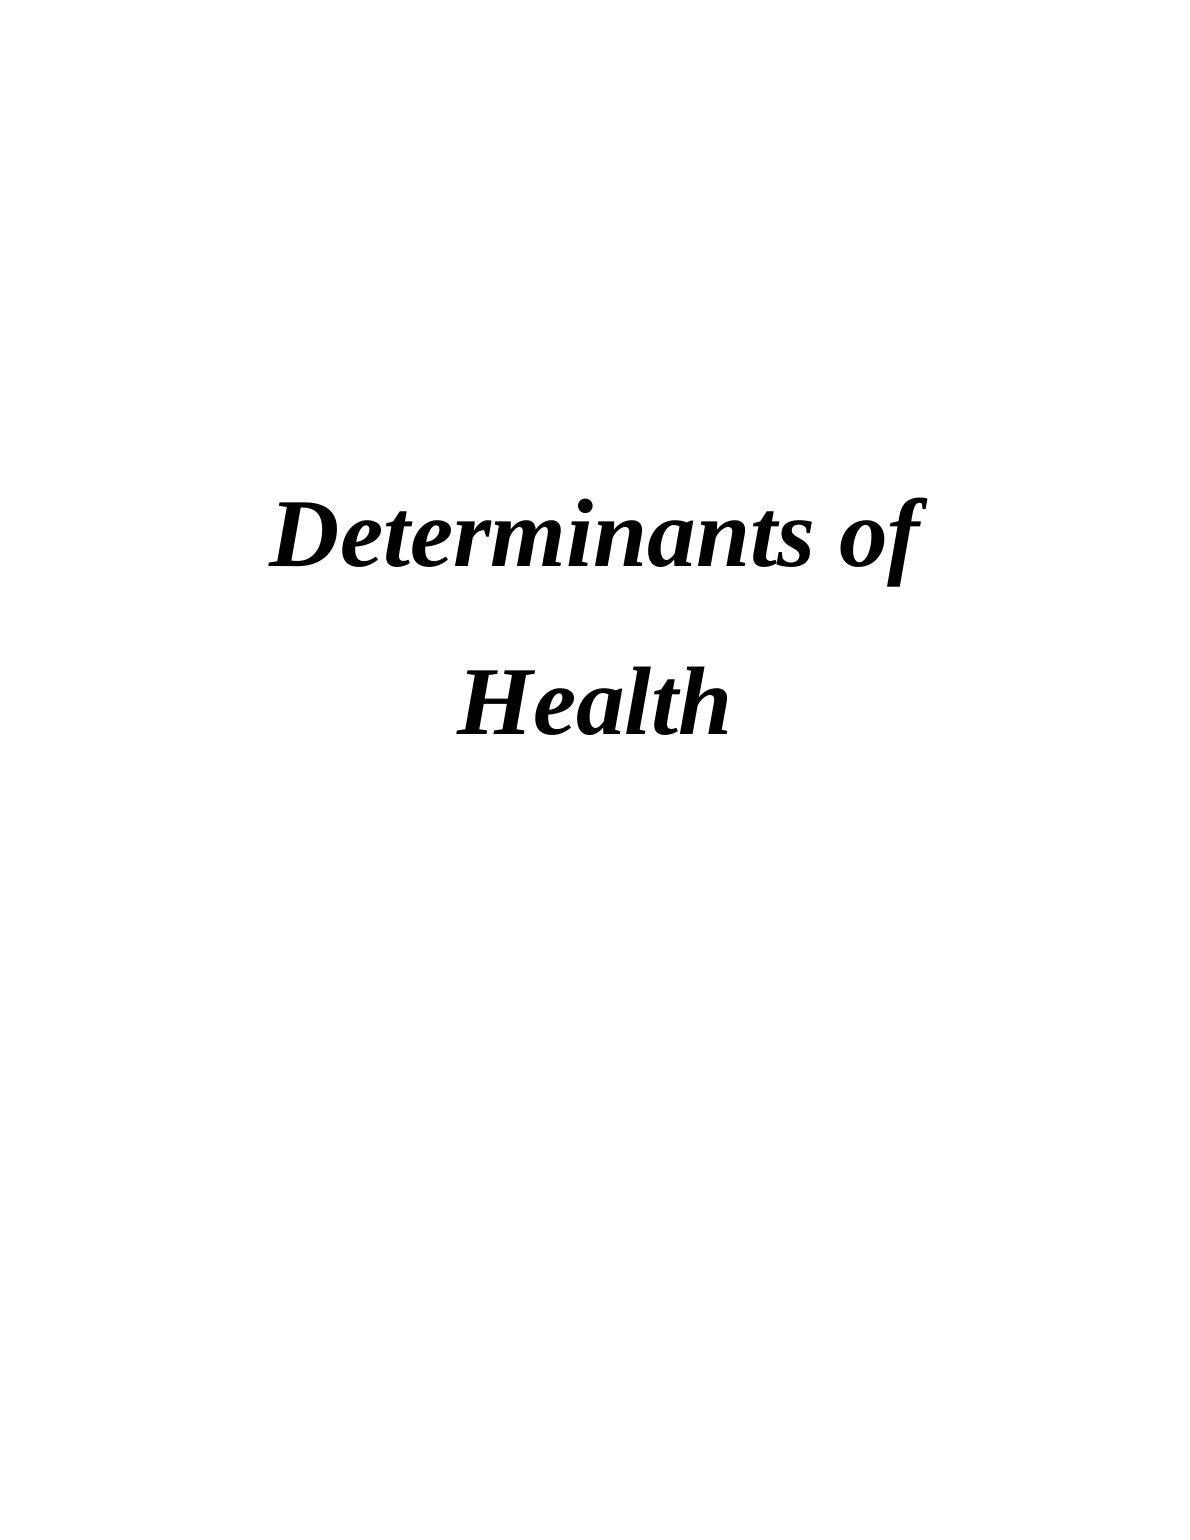 Determinants of Health (Doc)_1